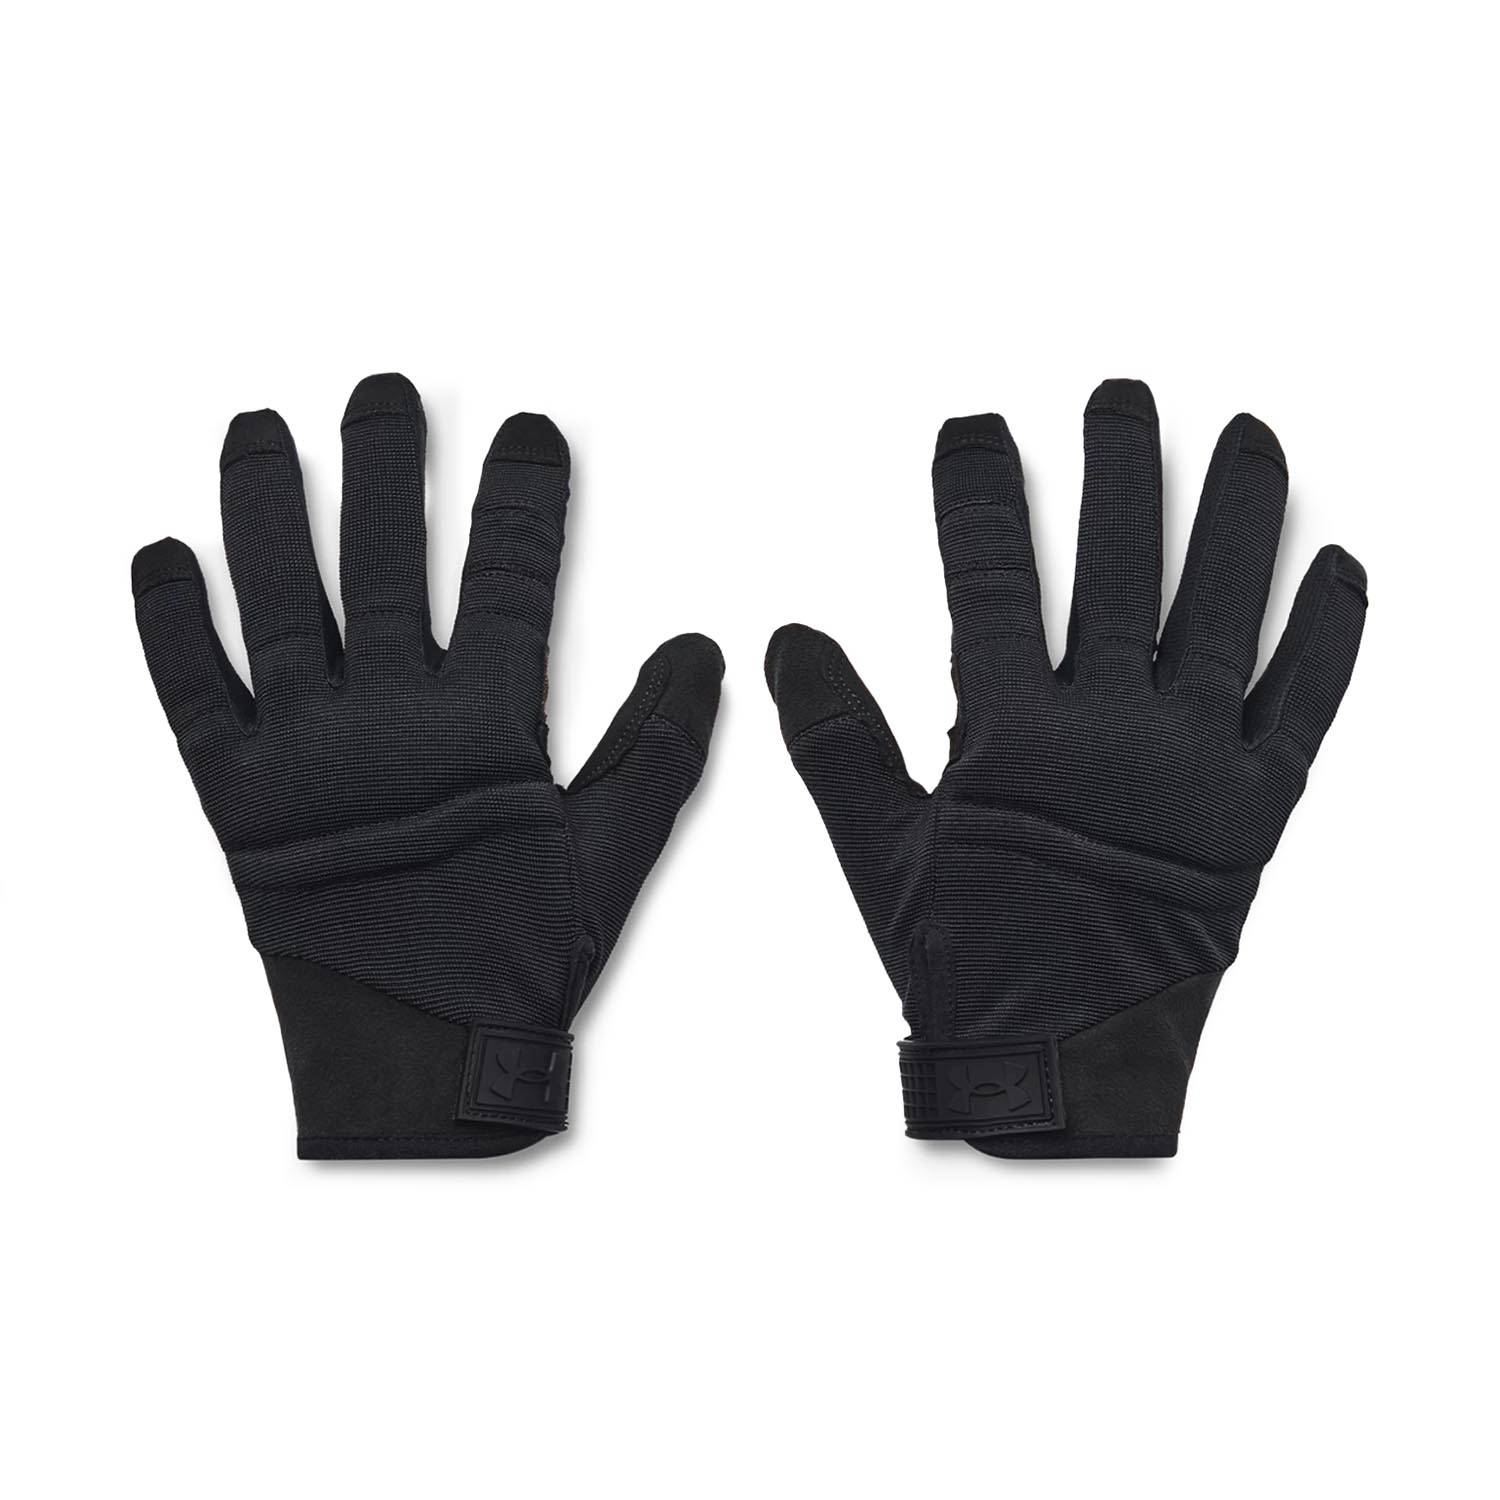 Under Armour Men's Tactical Blackout Gloves